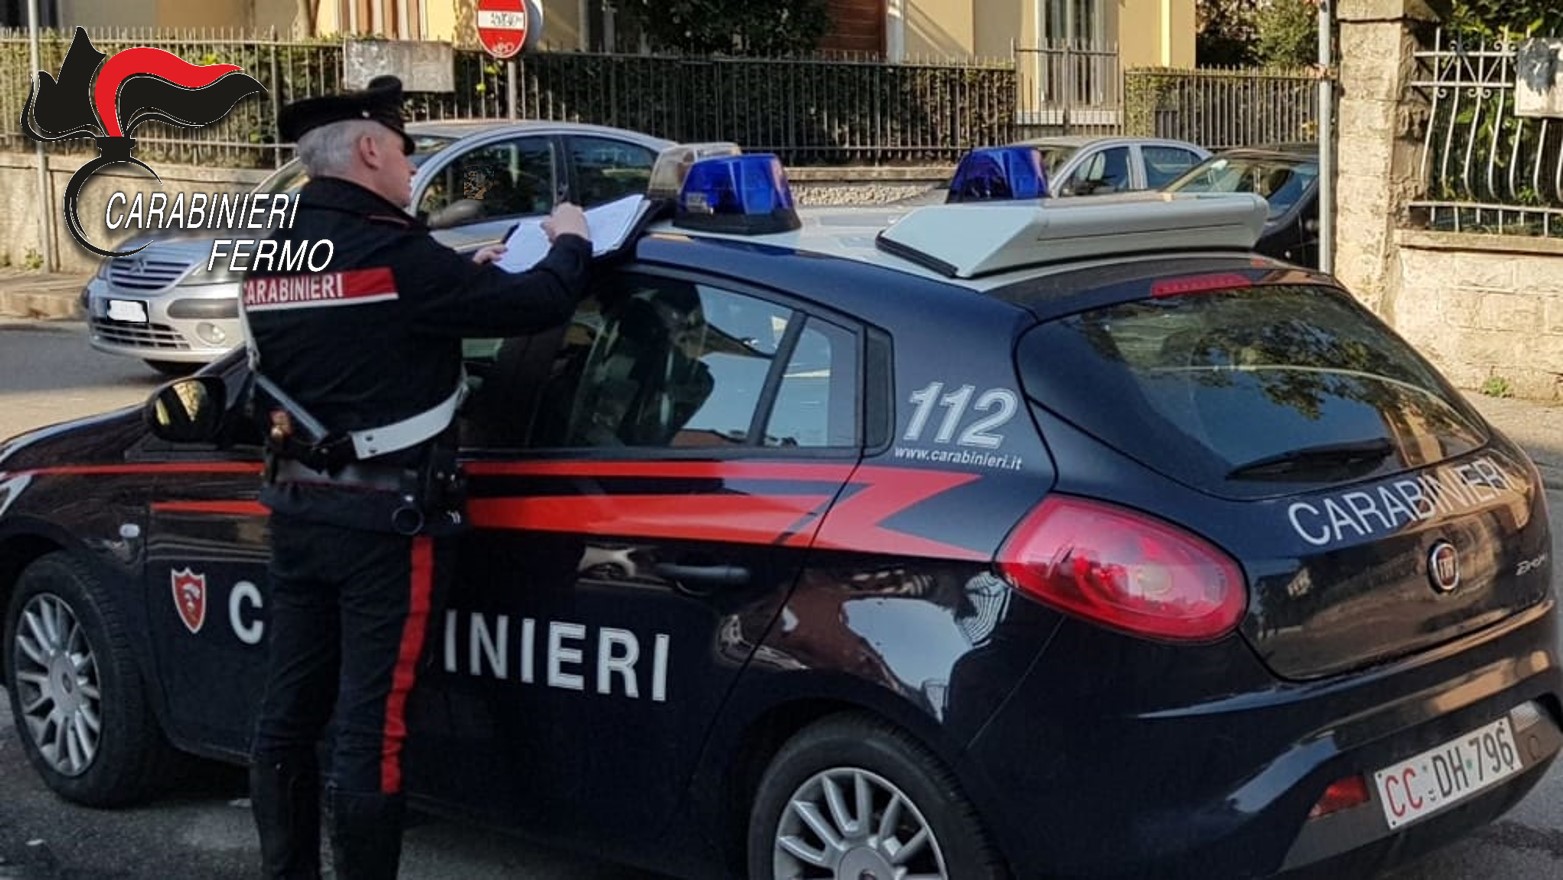 Non si ferma all’alt dei Carabinieri e fugge con l’auto: denunciato 51enne